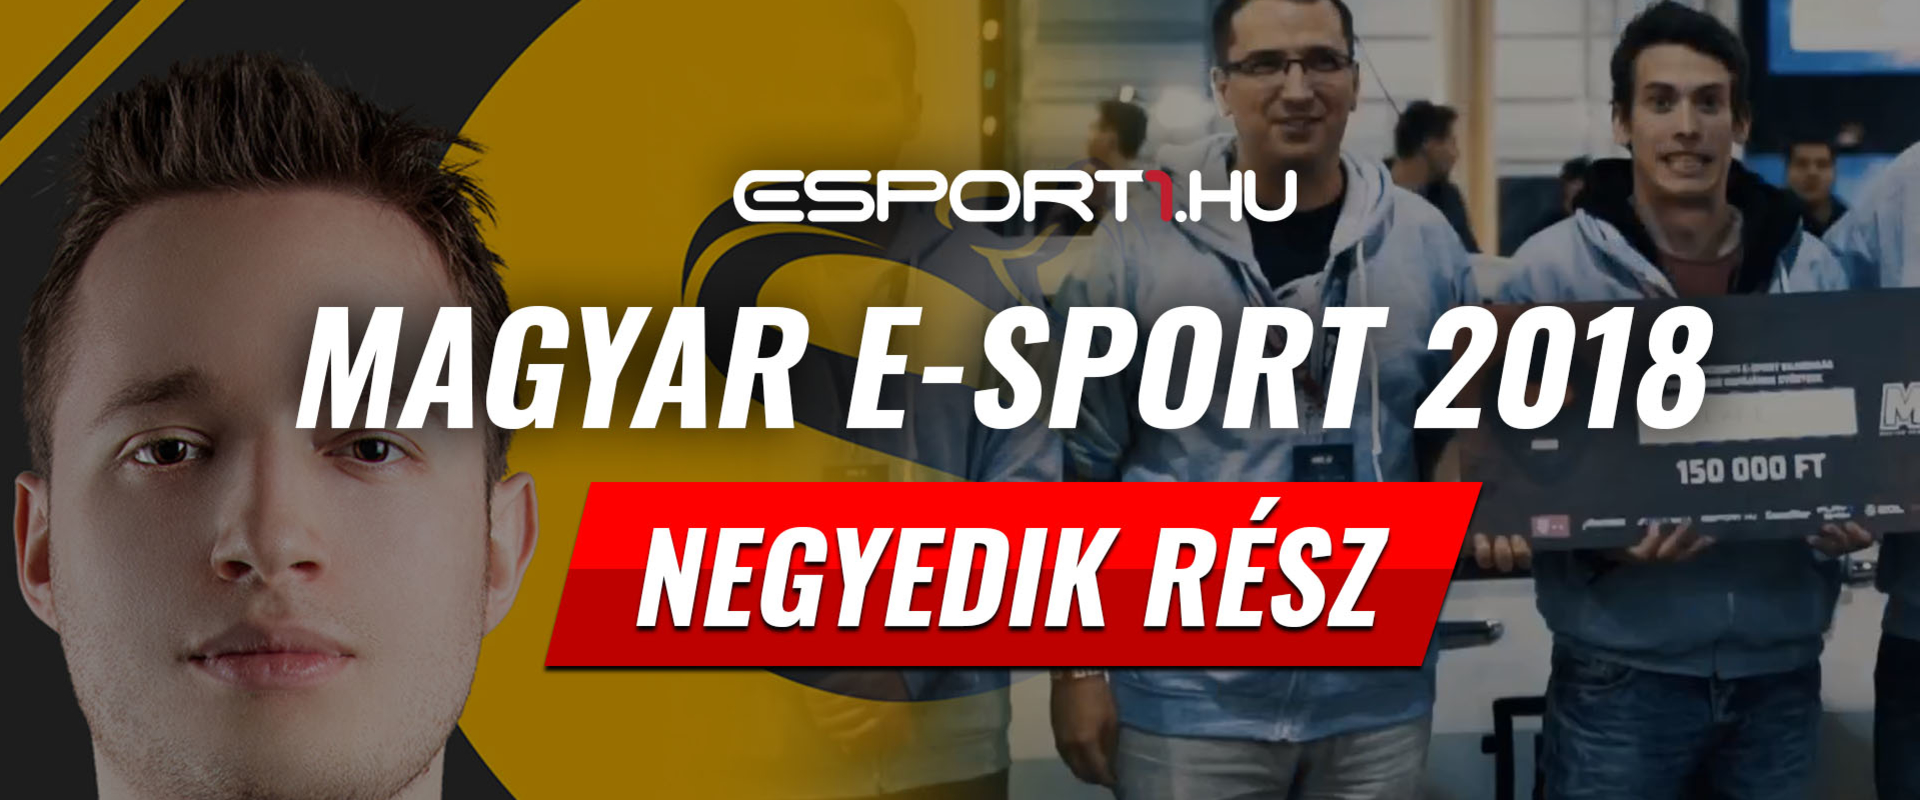 Az utolsó hónapokban indult be igazán a magyar e-sport - VIDEÓ